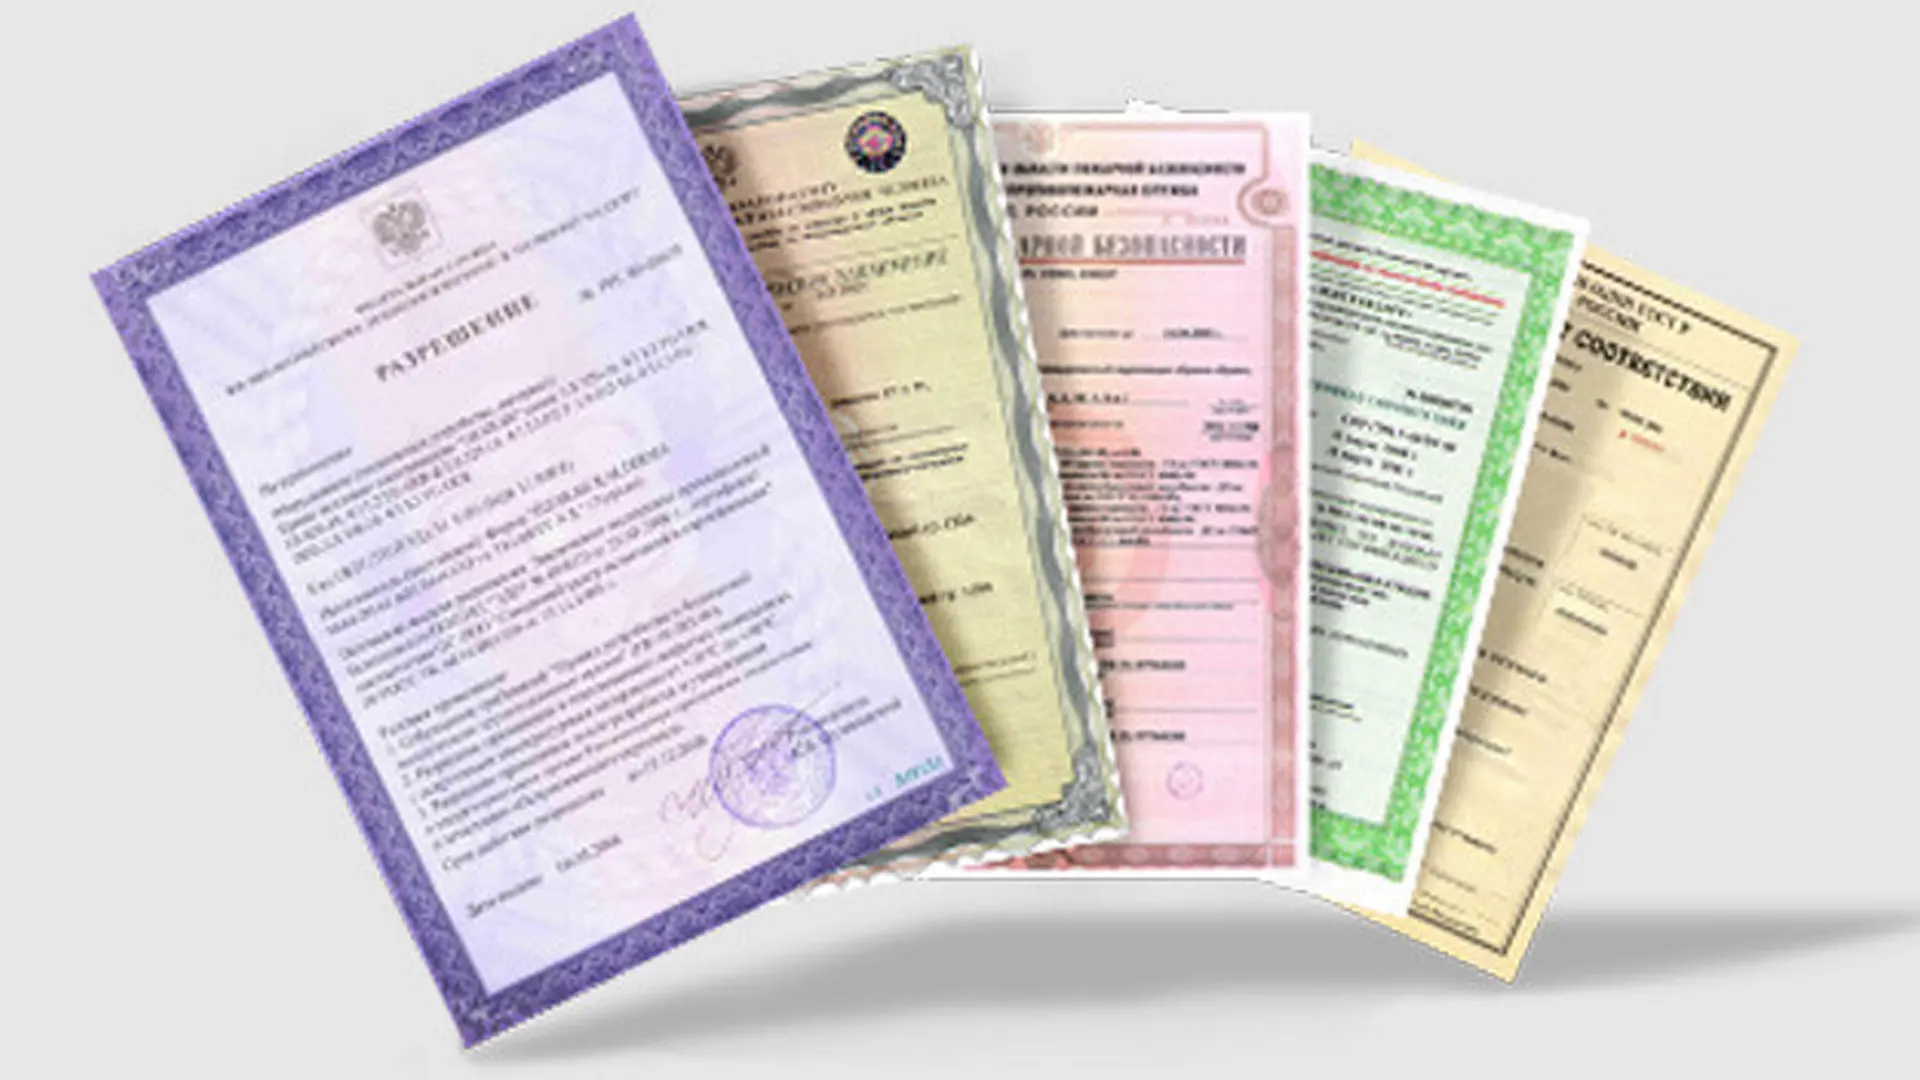 Аттестация продукции. Сертификация продукции. Сертификация товаров и услуг. Сертифицированная продукция. Сертификация продукции и лицензирование.